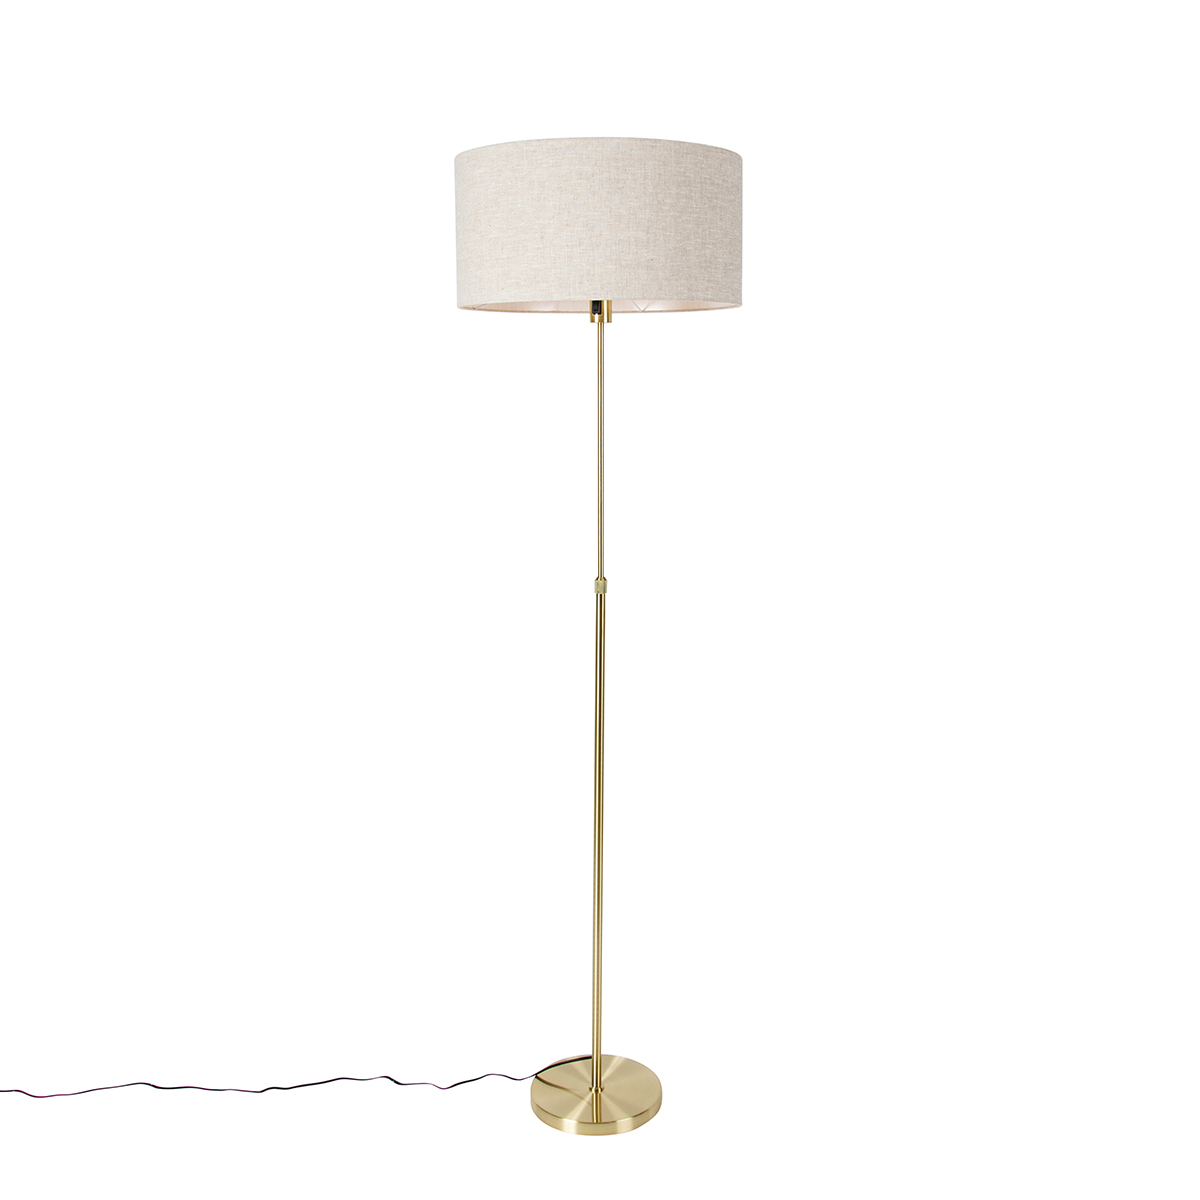 E-shop Stojacia lampa nastaviteľná zlatá s tienidlom svetlo šedá 50 cm - Parte